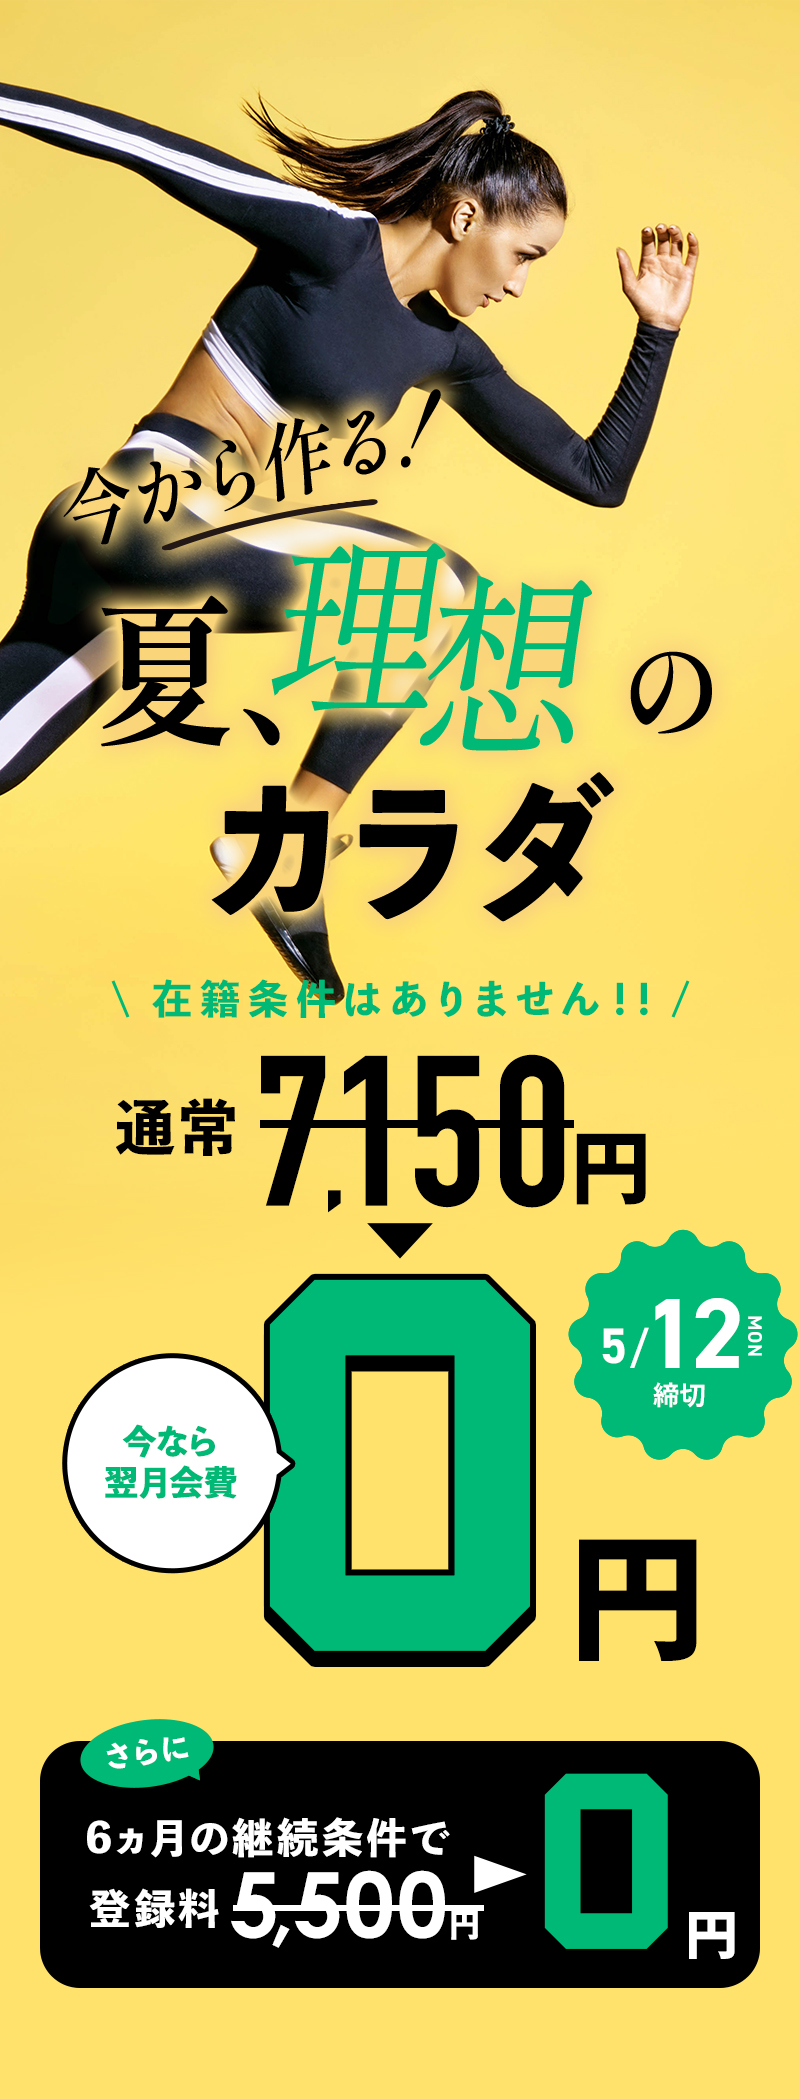 驚きのロープライス！入会金0円登録料・6月7月会費全てコミコミ！総額2,900円